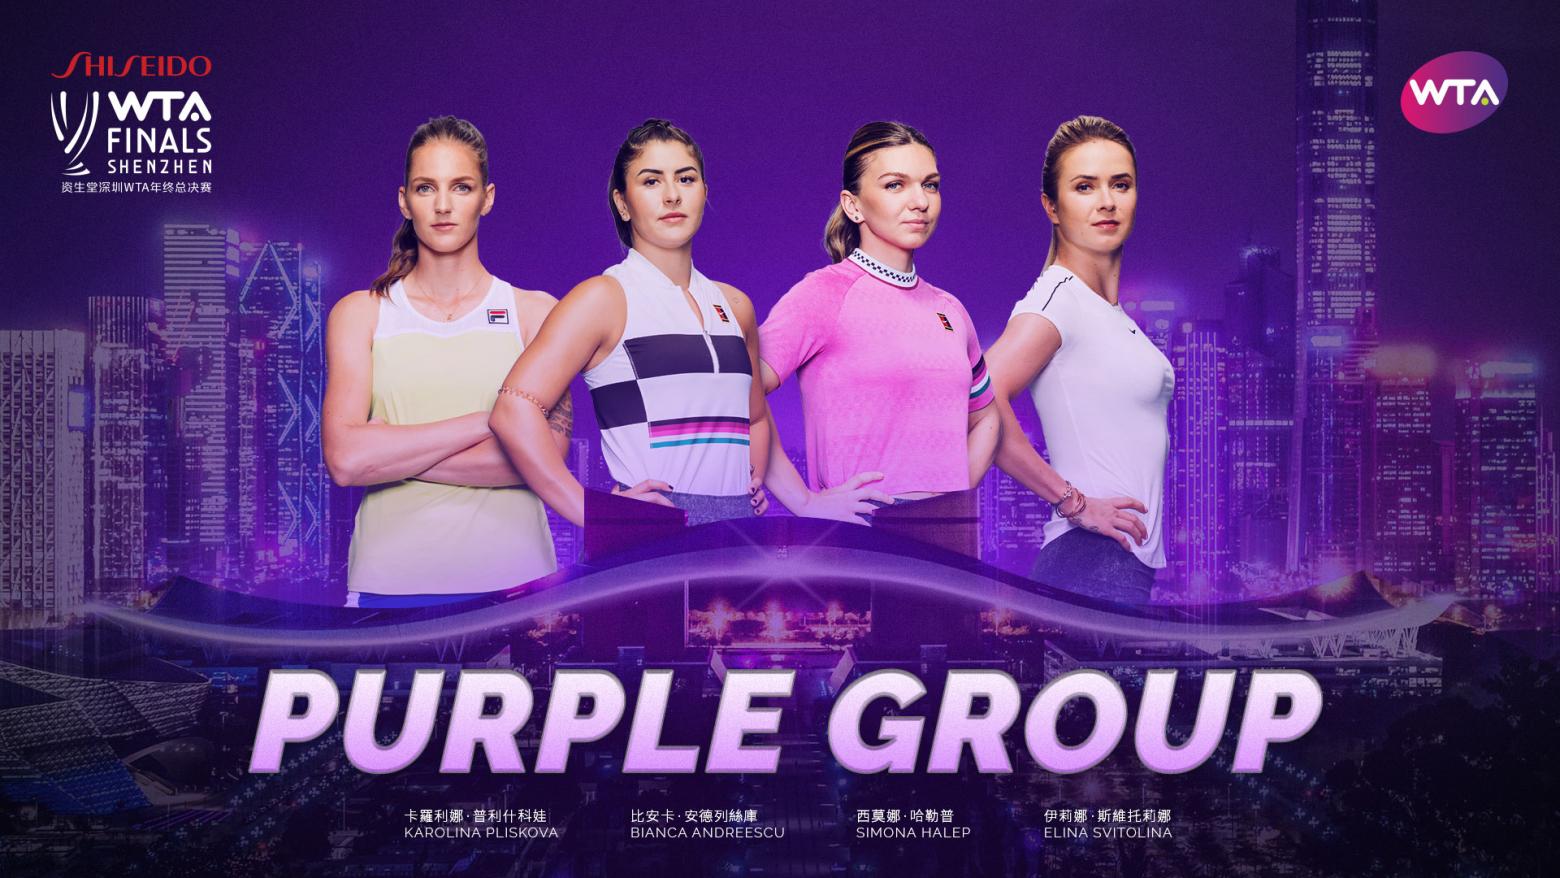 wta-finals-shenzhen_group_purple